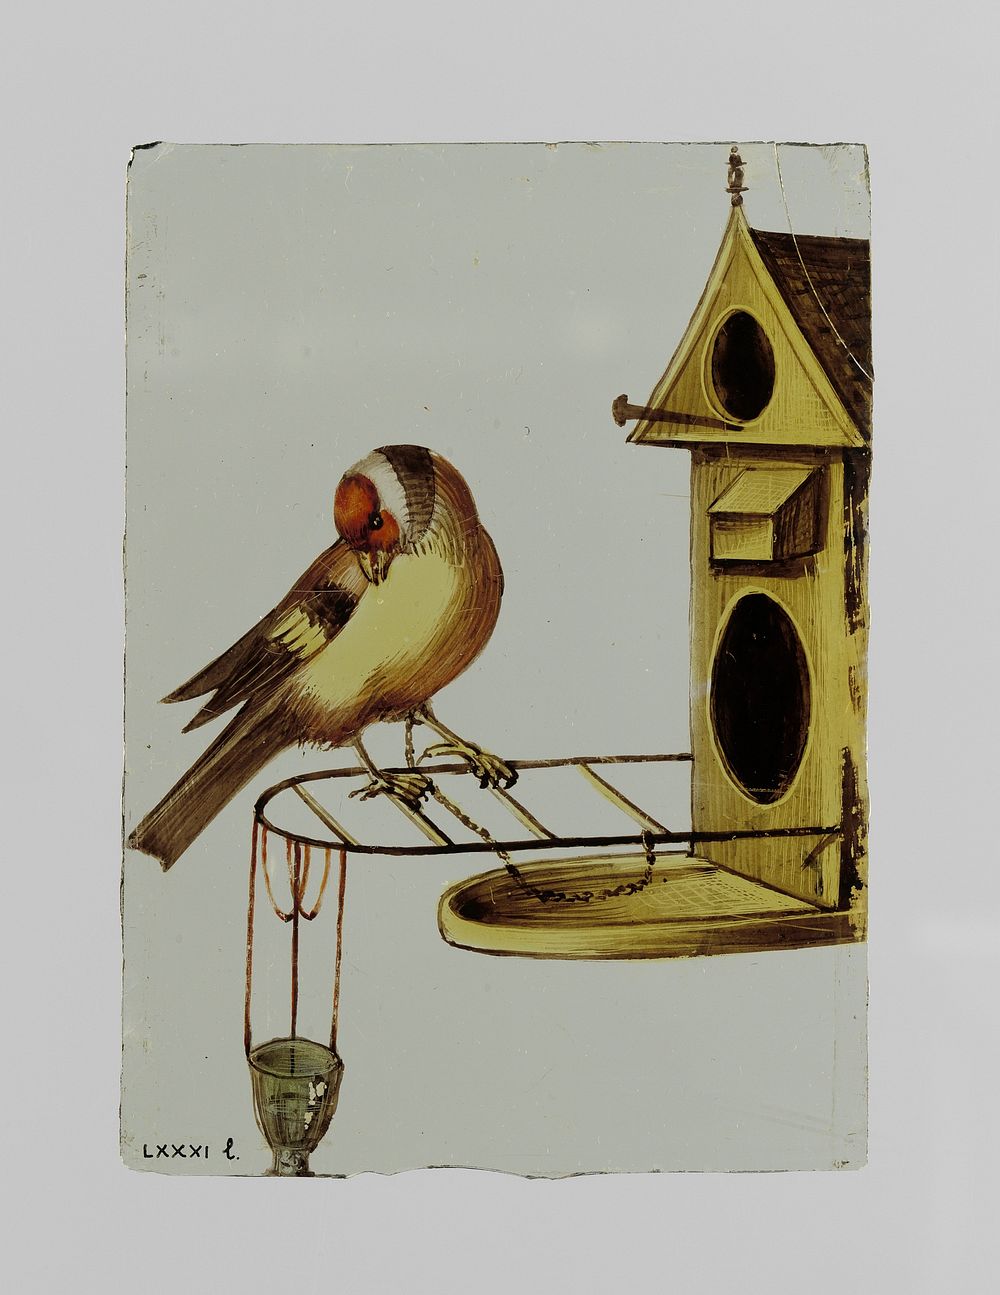 Ruit met een geketende vogel voor een vogelhuisje (c. 1650 - c. 1675) by anonymous